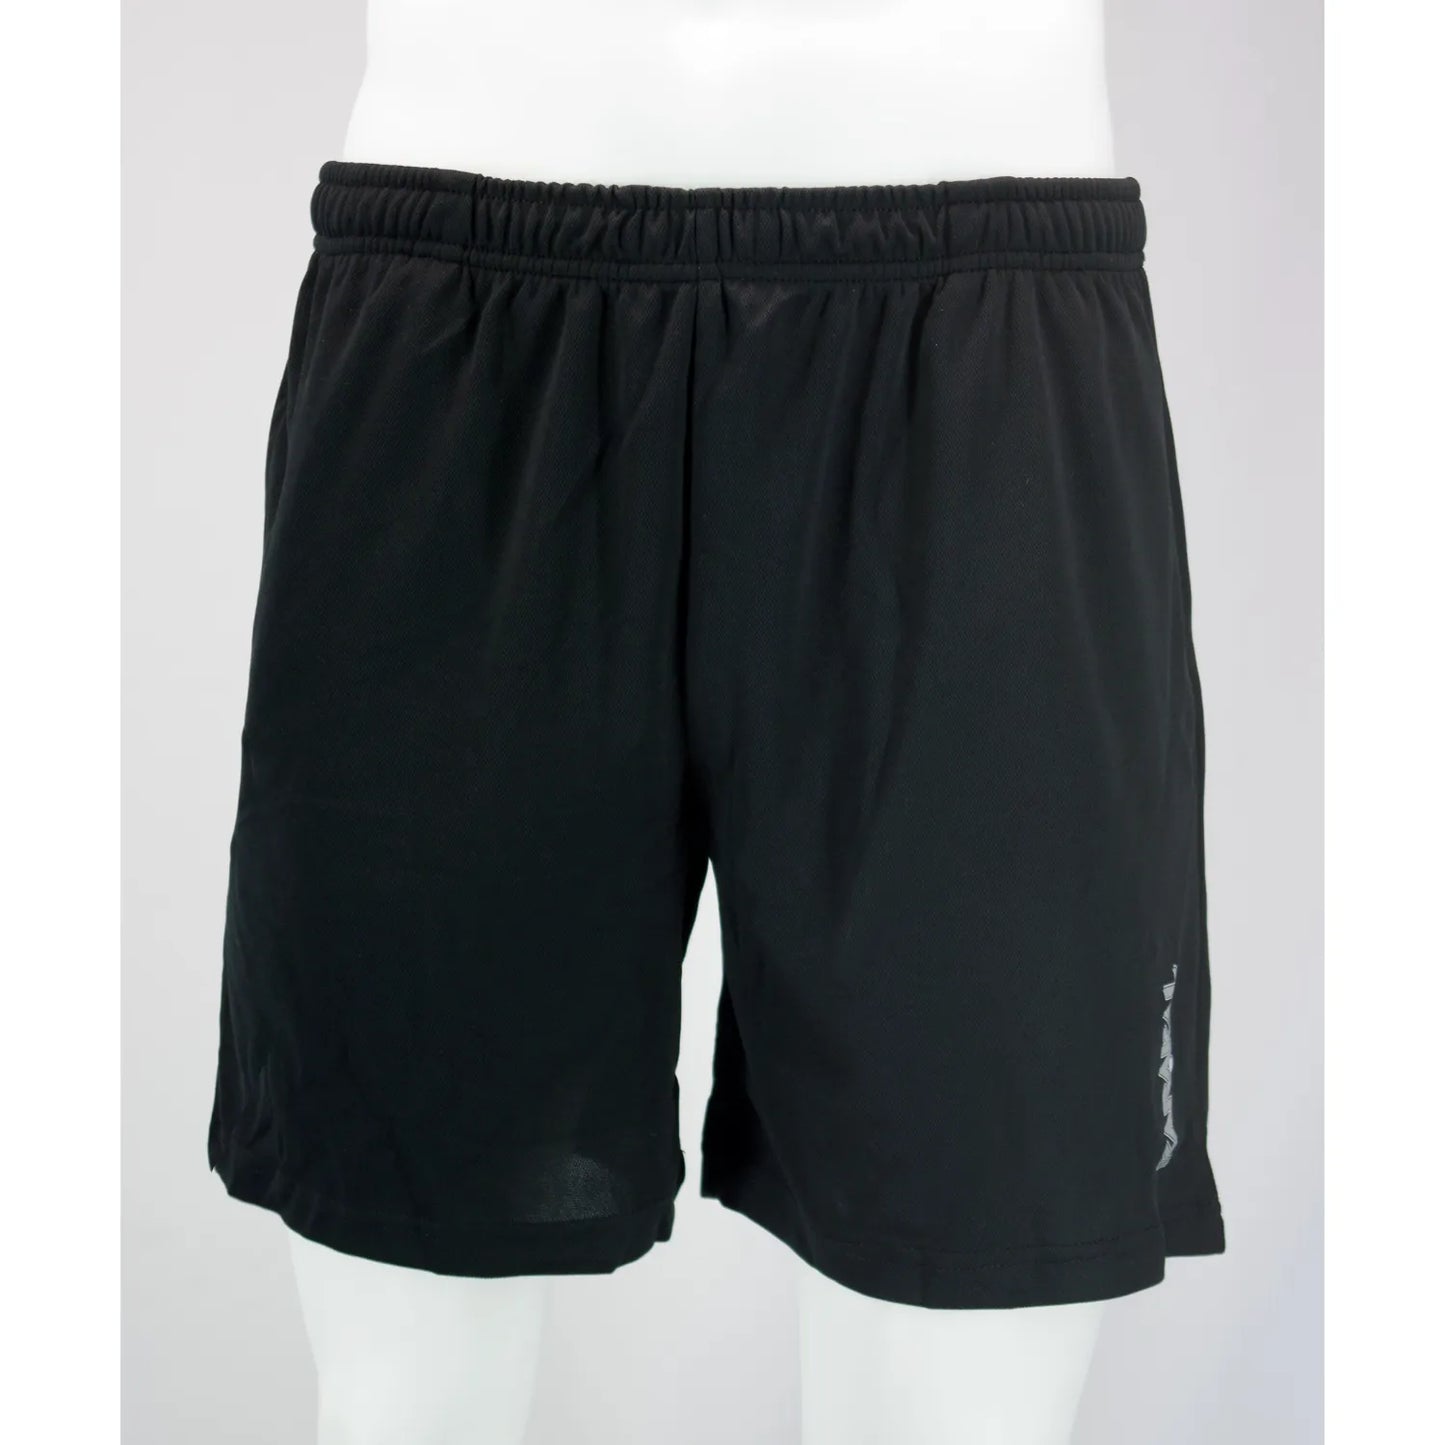 Karakal Club Shorts